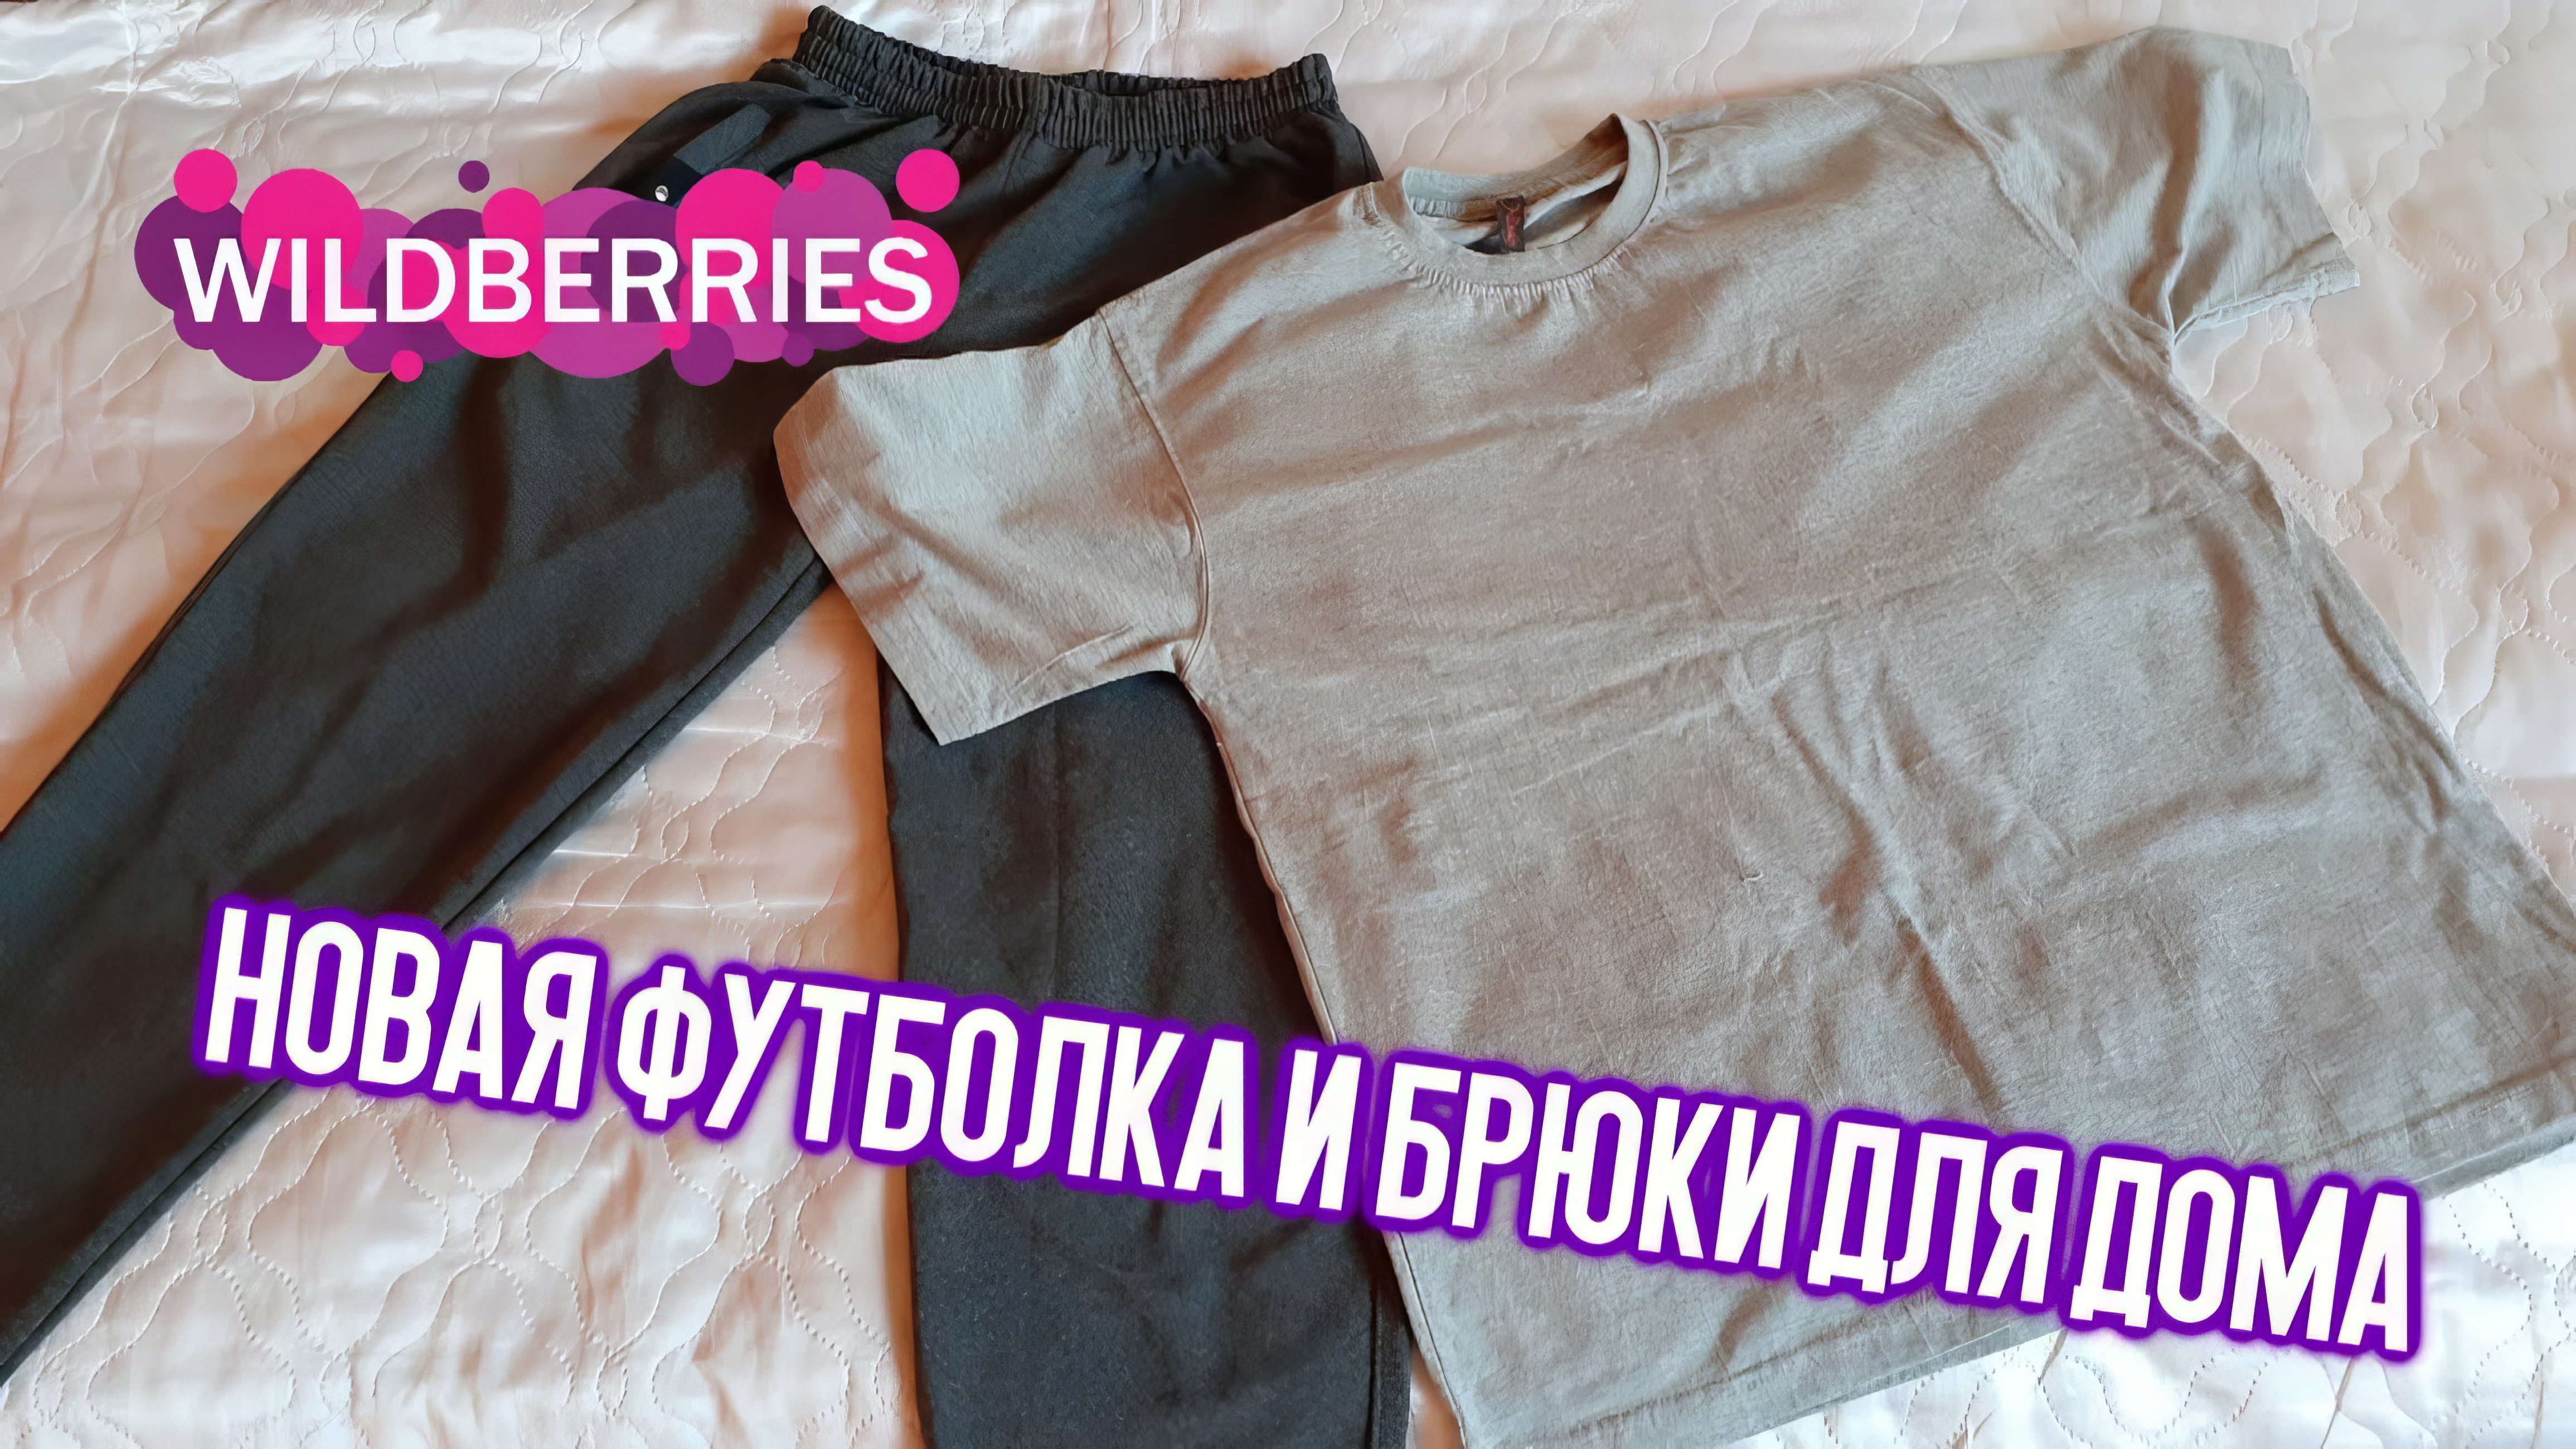 Обзор на новую футболку и брюки для дома из магазина Wildberries